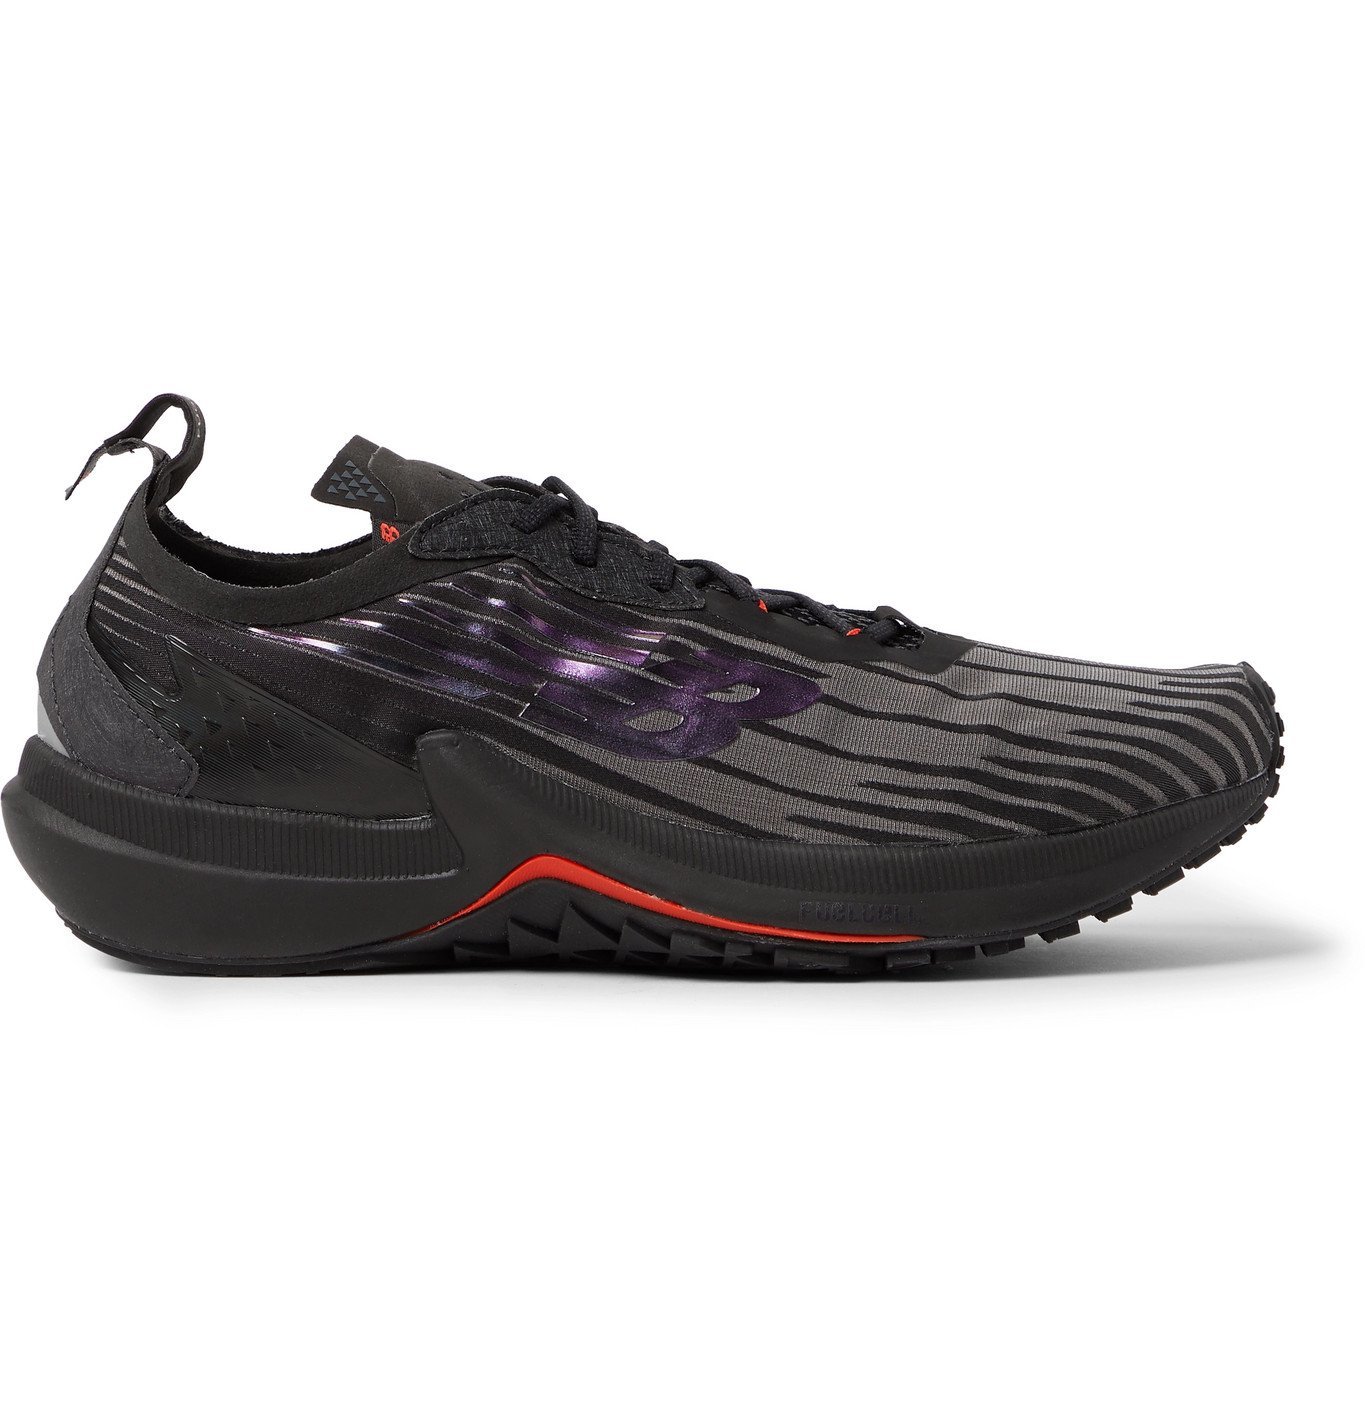 New Balance - FuelCell Speedrift Felt-Trimmed Woven Running Sneakers - Black